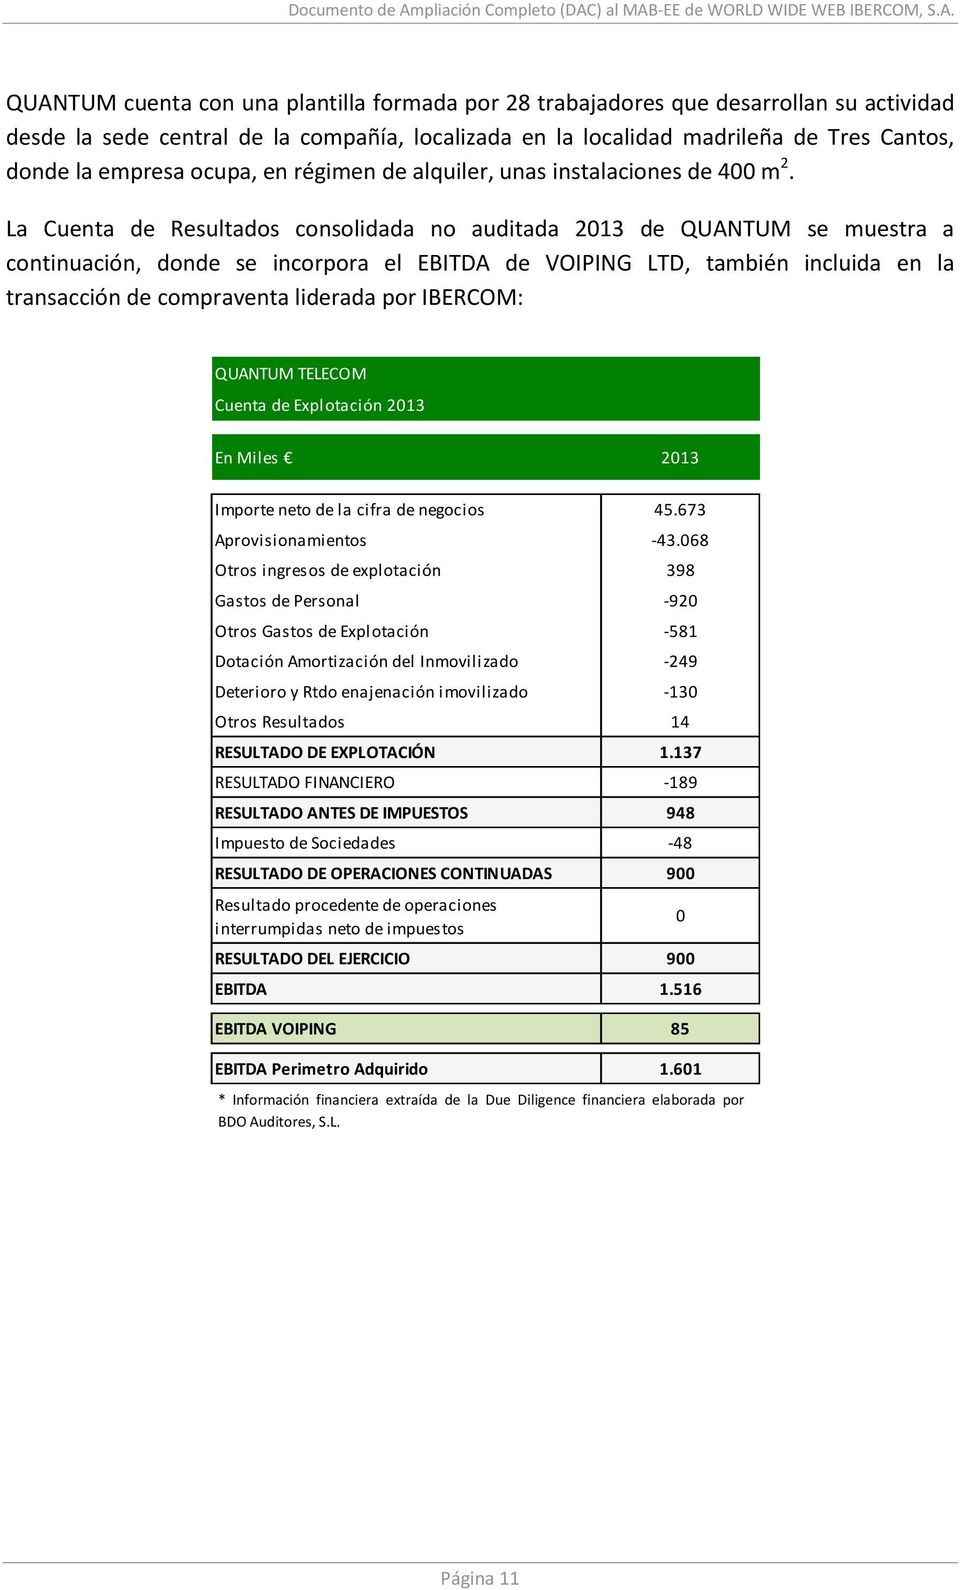 La Cuenta de Resultados consolidada no auditada 2013 de QUANTUM se muestra a continuación, donde se incorpora el EBITDA de VOIPING LTD, también incluida en la transacción de compraventa liderada por